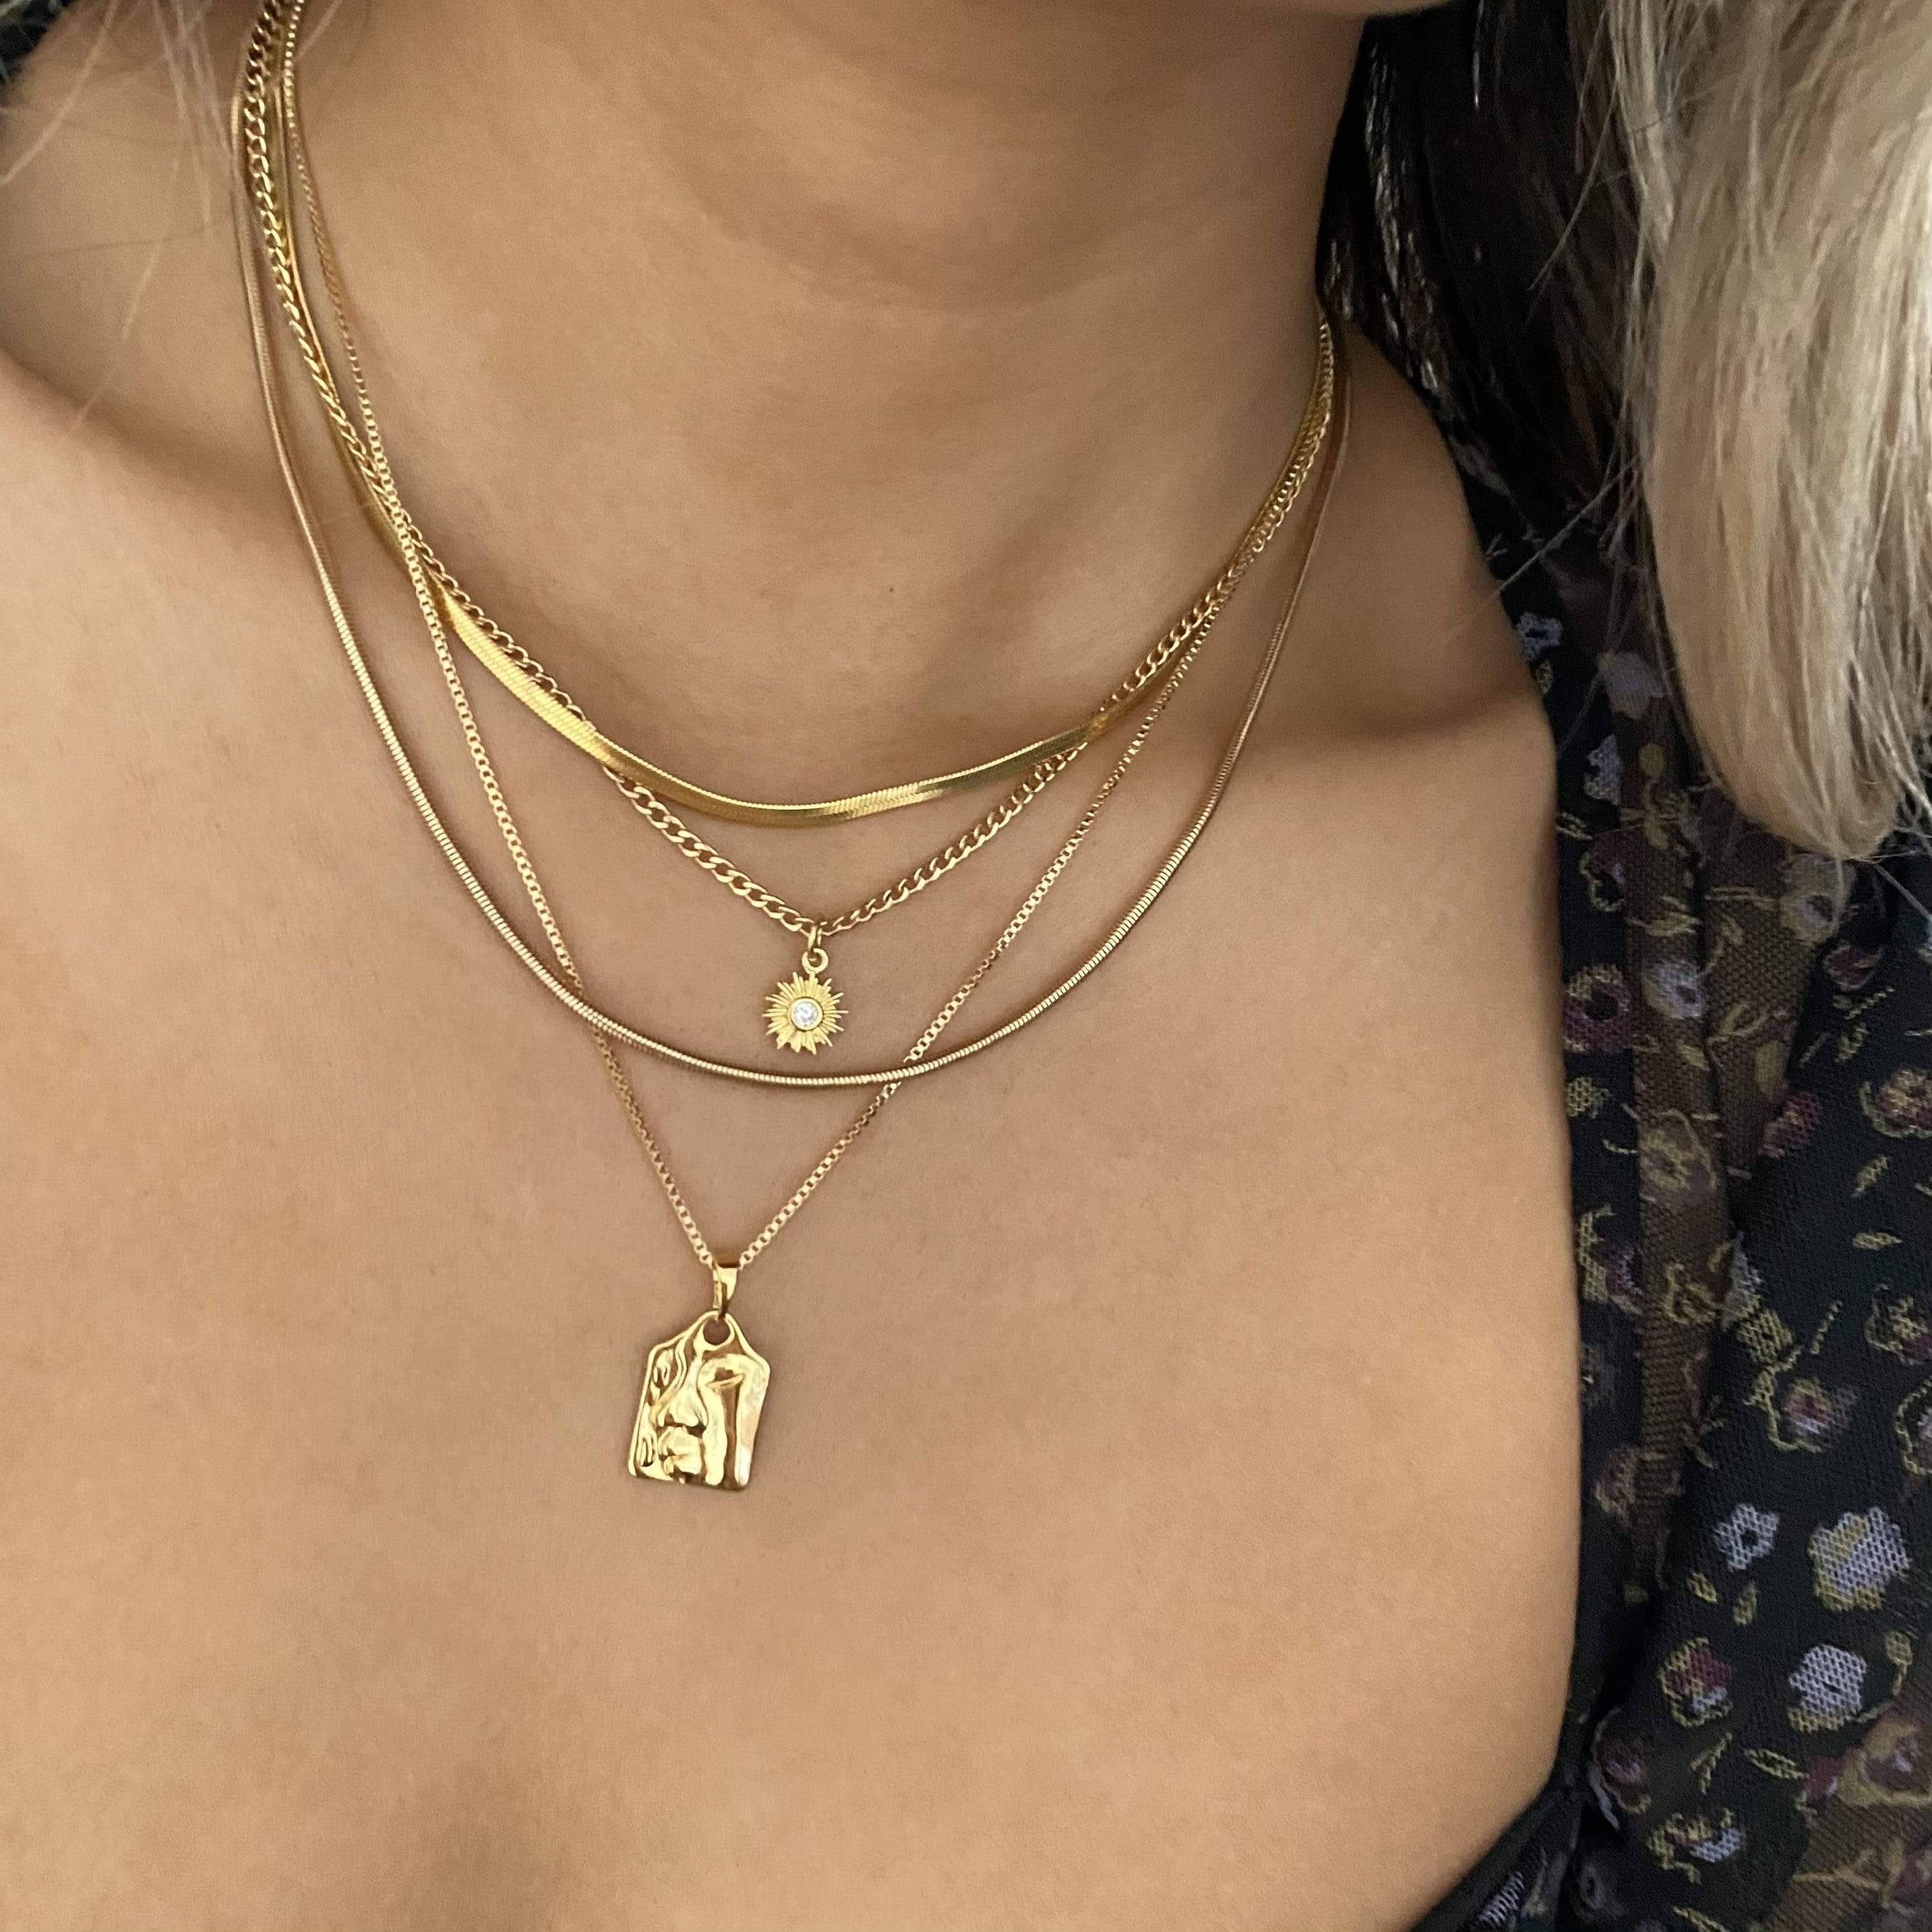 LE sensor necklace Lily Chain Necklace